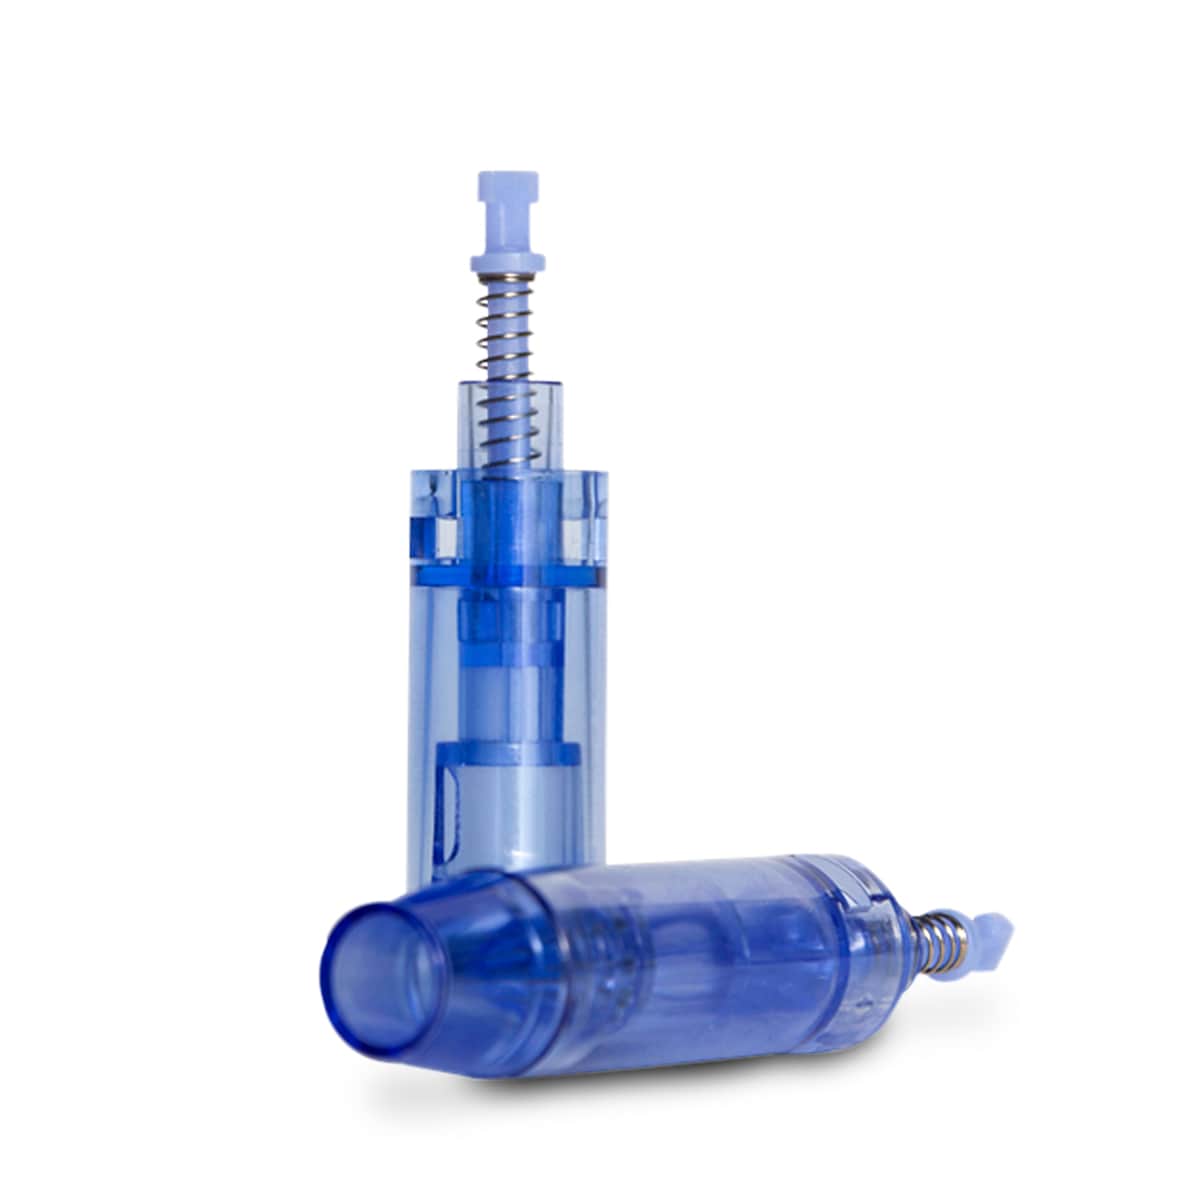 Cartucho Derma Pen Azul - Kit com 10 unidades - 12 agulhas - Smart GR